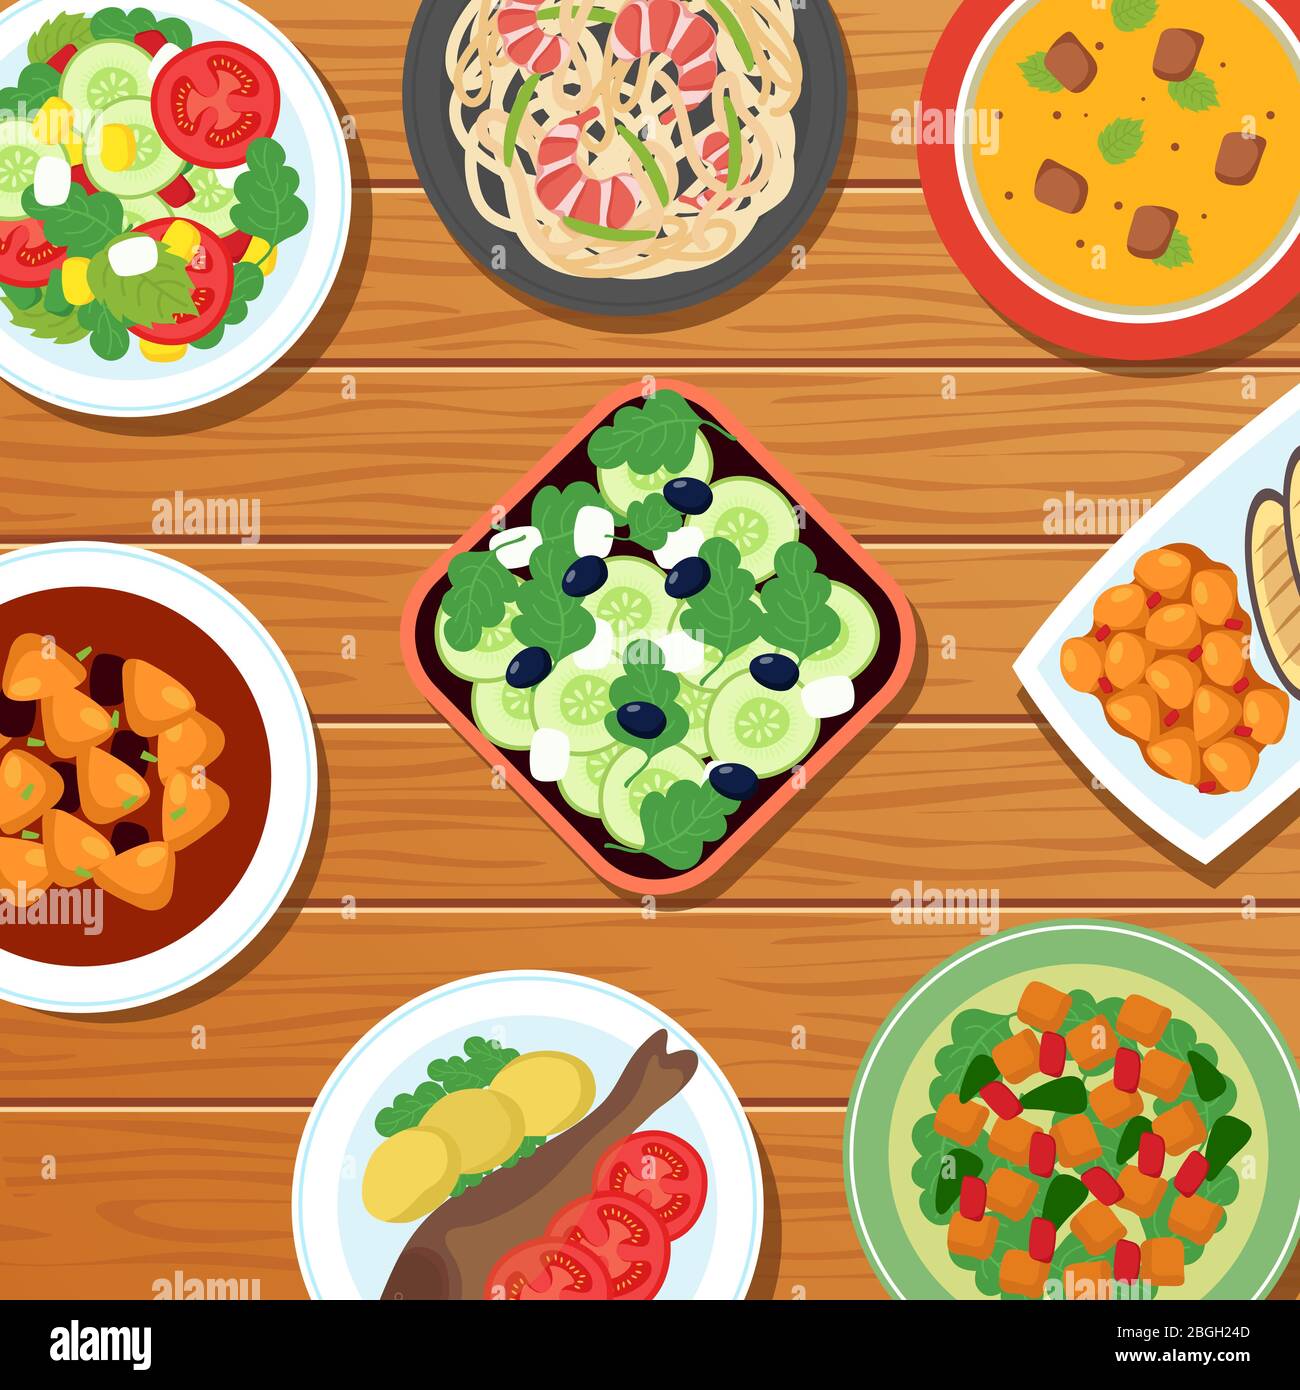 Gesundes asiatisches thai-Essen auf dem Tisch. Gemüse, Fleisch und Fisch Lebensmittel Gerichte Vektor-Illustration. Küche thailand, Meeresfrüchte und orientalische Salate Stock Vektor